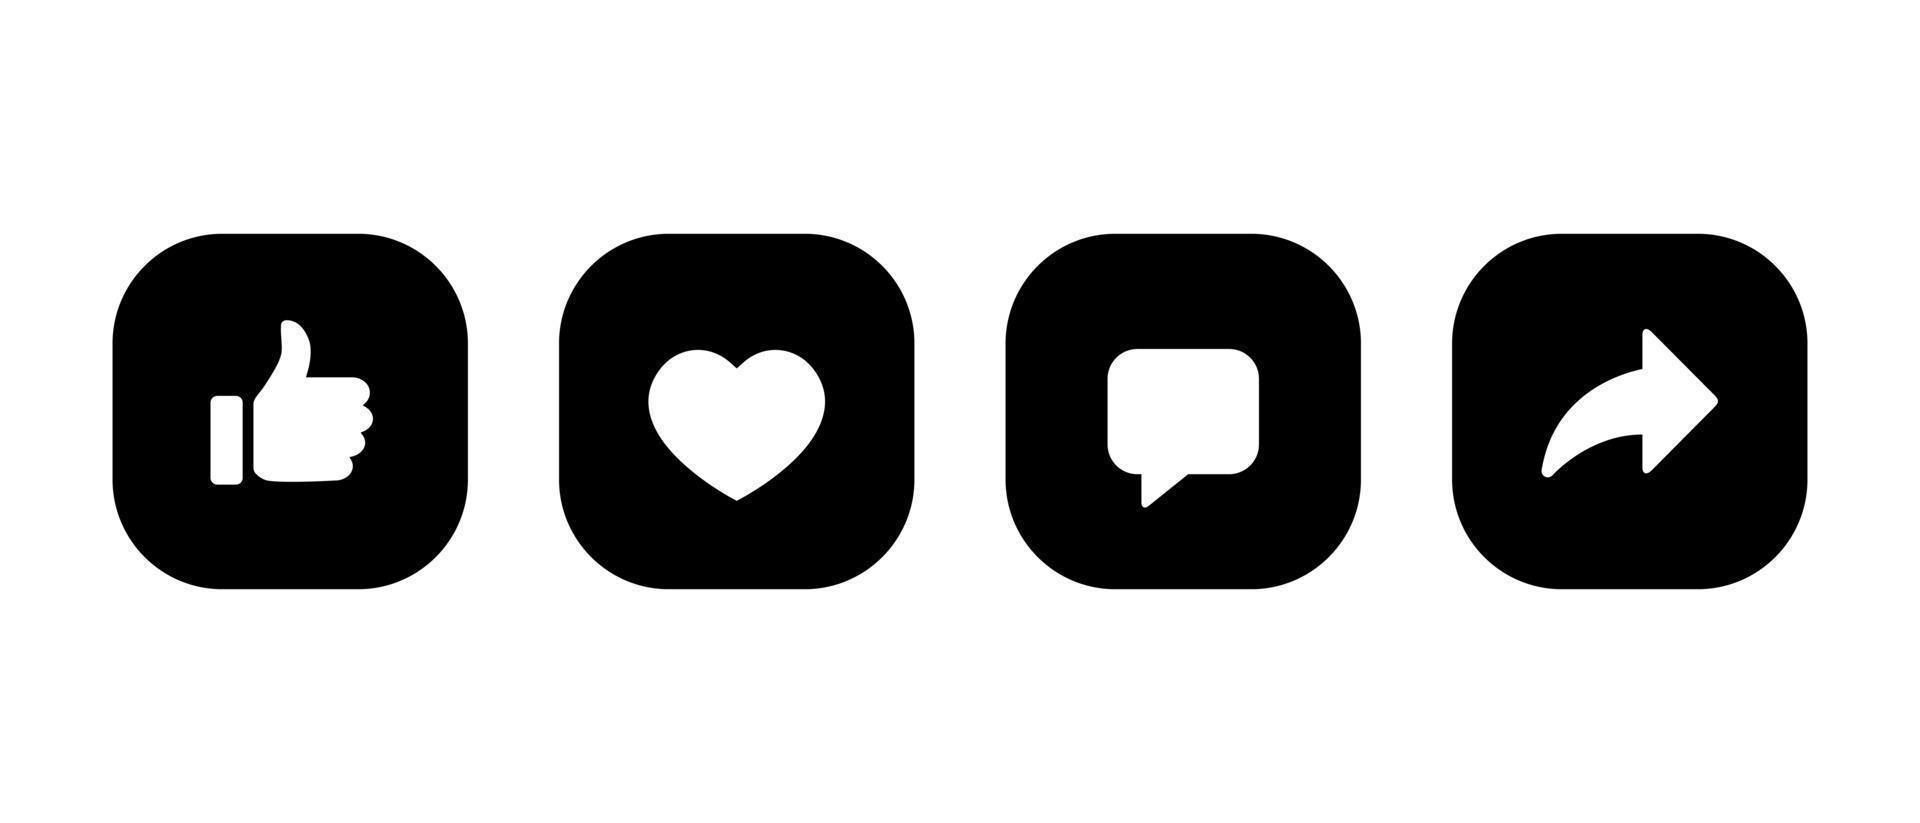 me gusta, amar, comentar y compartir vector icono en botón cuadrado. elementos de redes sociales